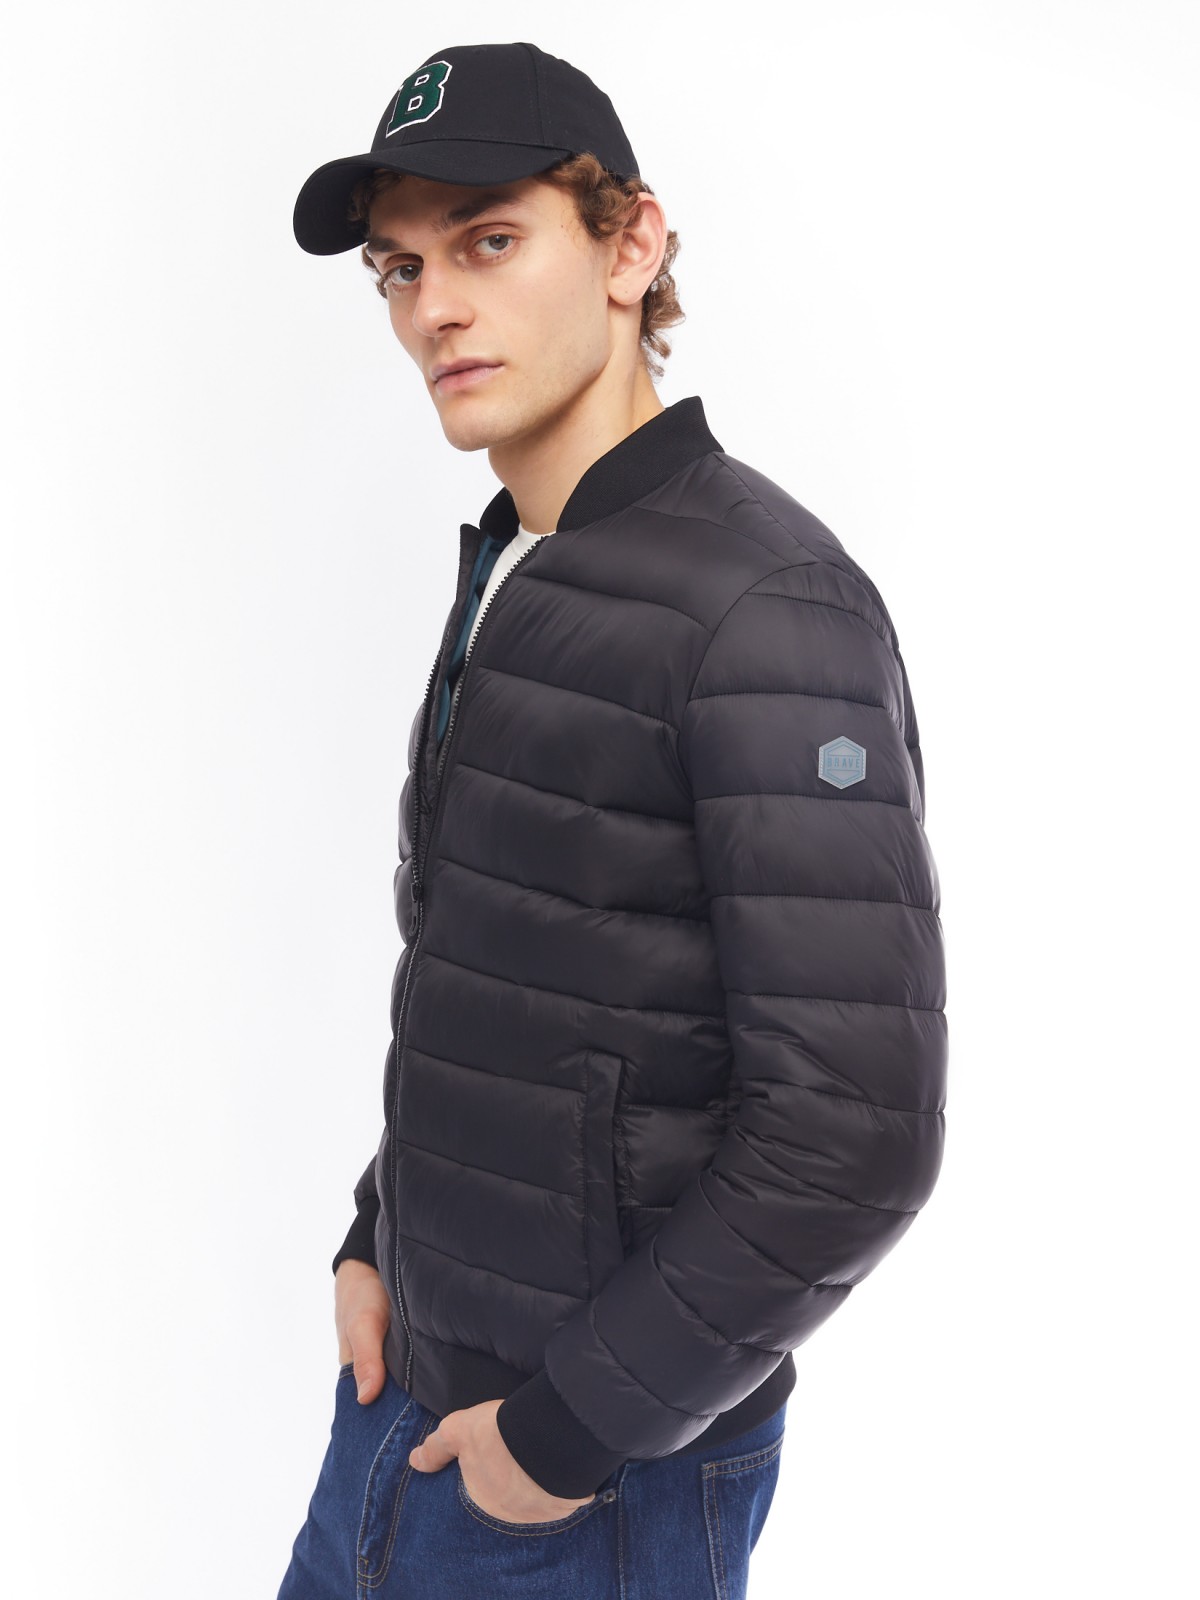 Лёгкая утеплённая куртка-бомбер с воротником-стойкой zolla 014125102094, цвет черный, размер S - фото 1